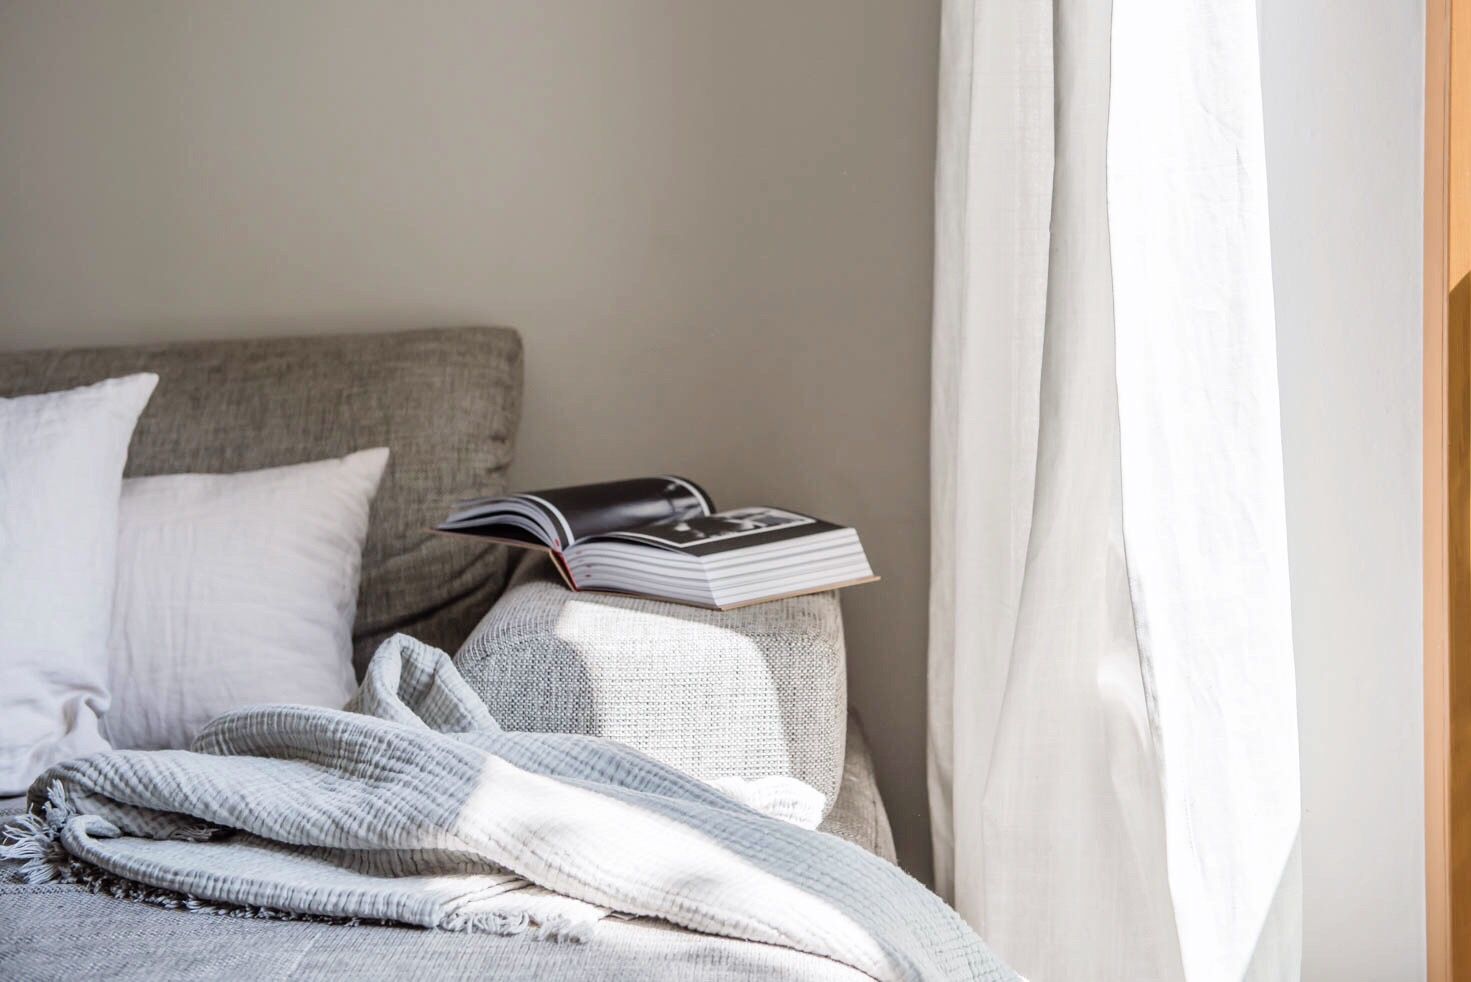 Image d'un canapé avec des coussins, une couverture et un livre ouvert sur le bord. Le canapé est à côté d'un rideau blanc